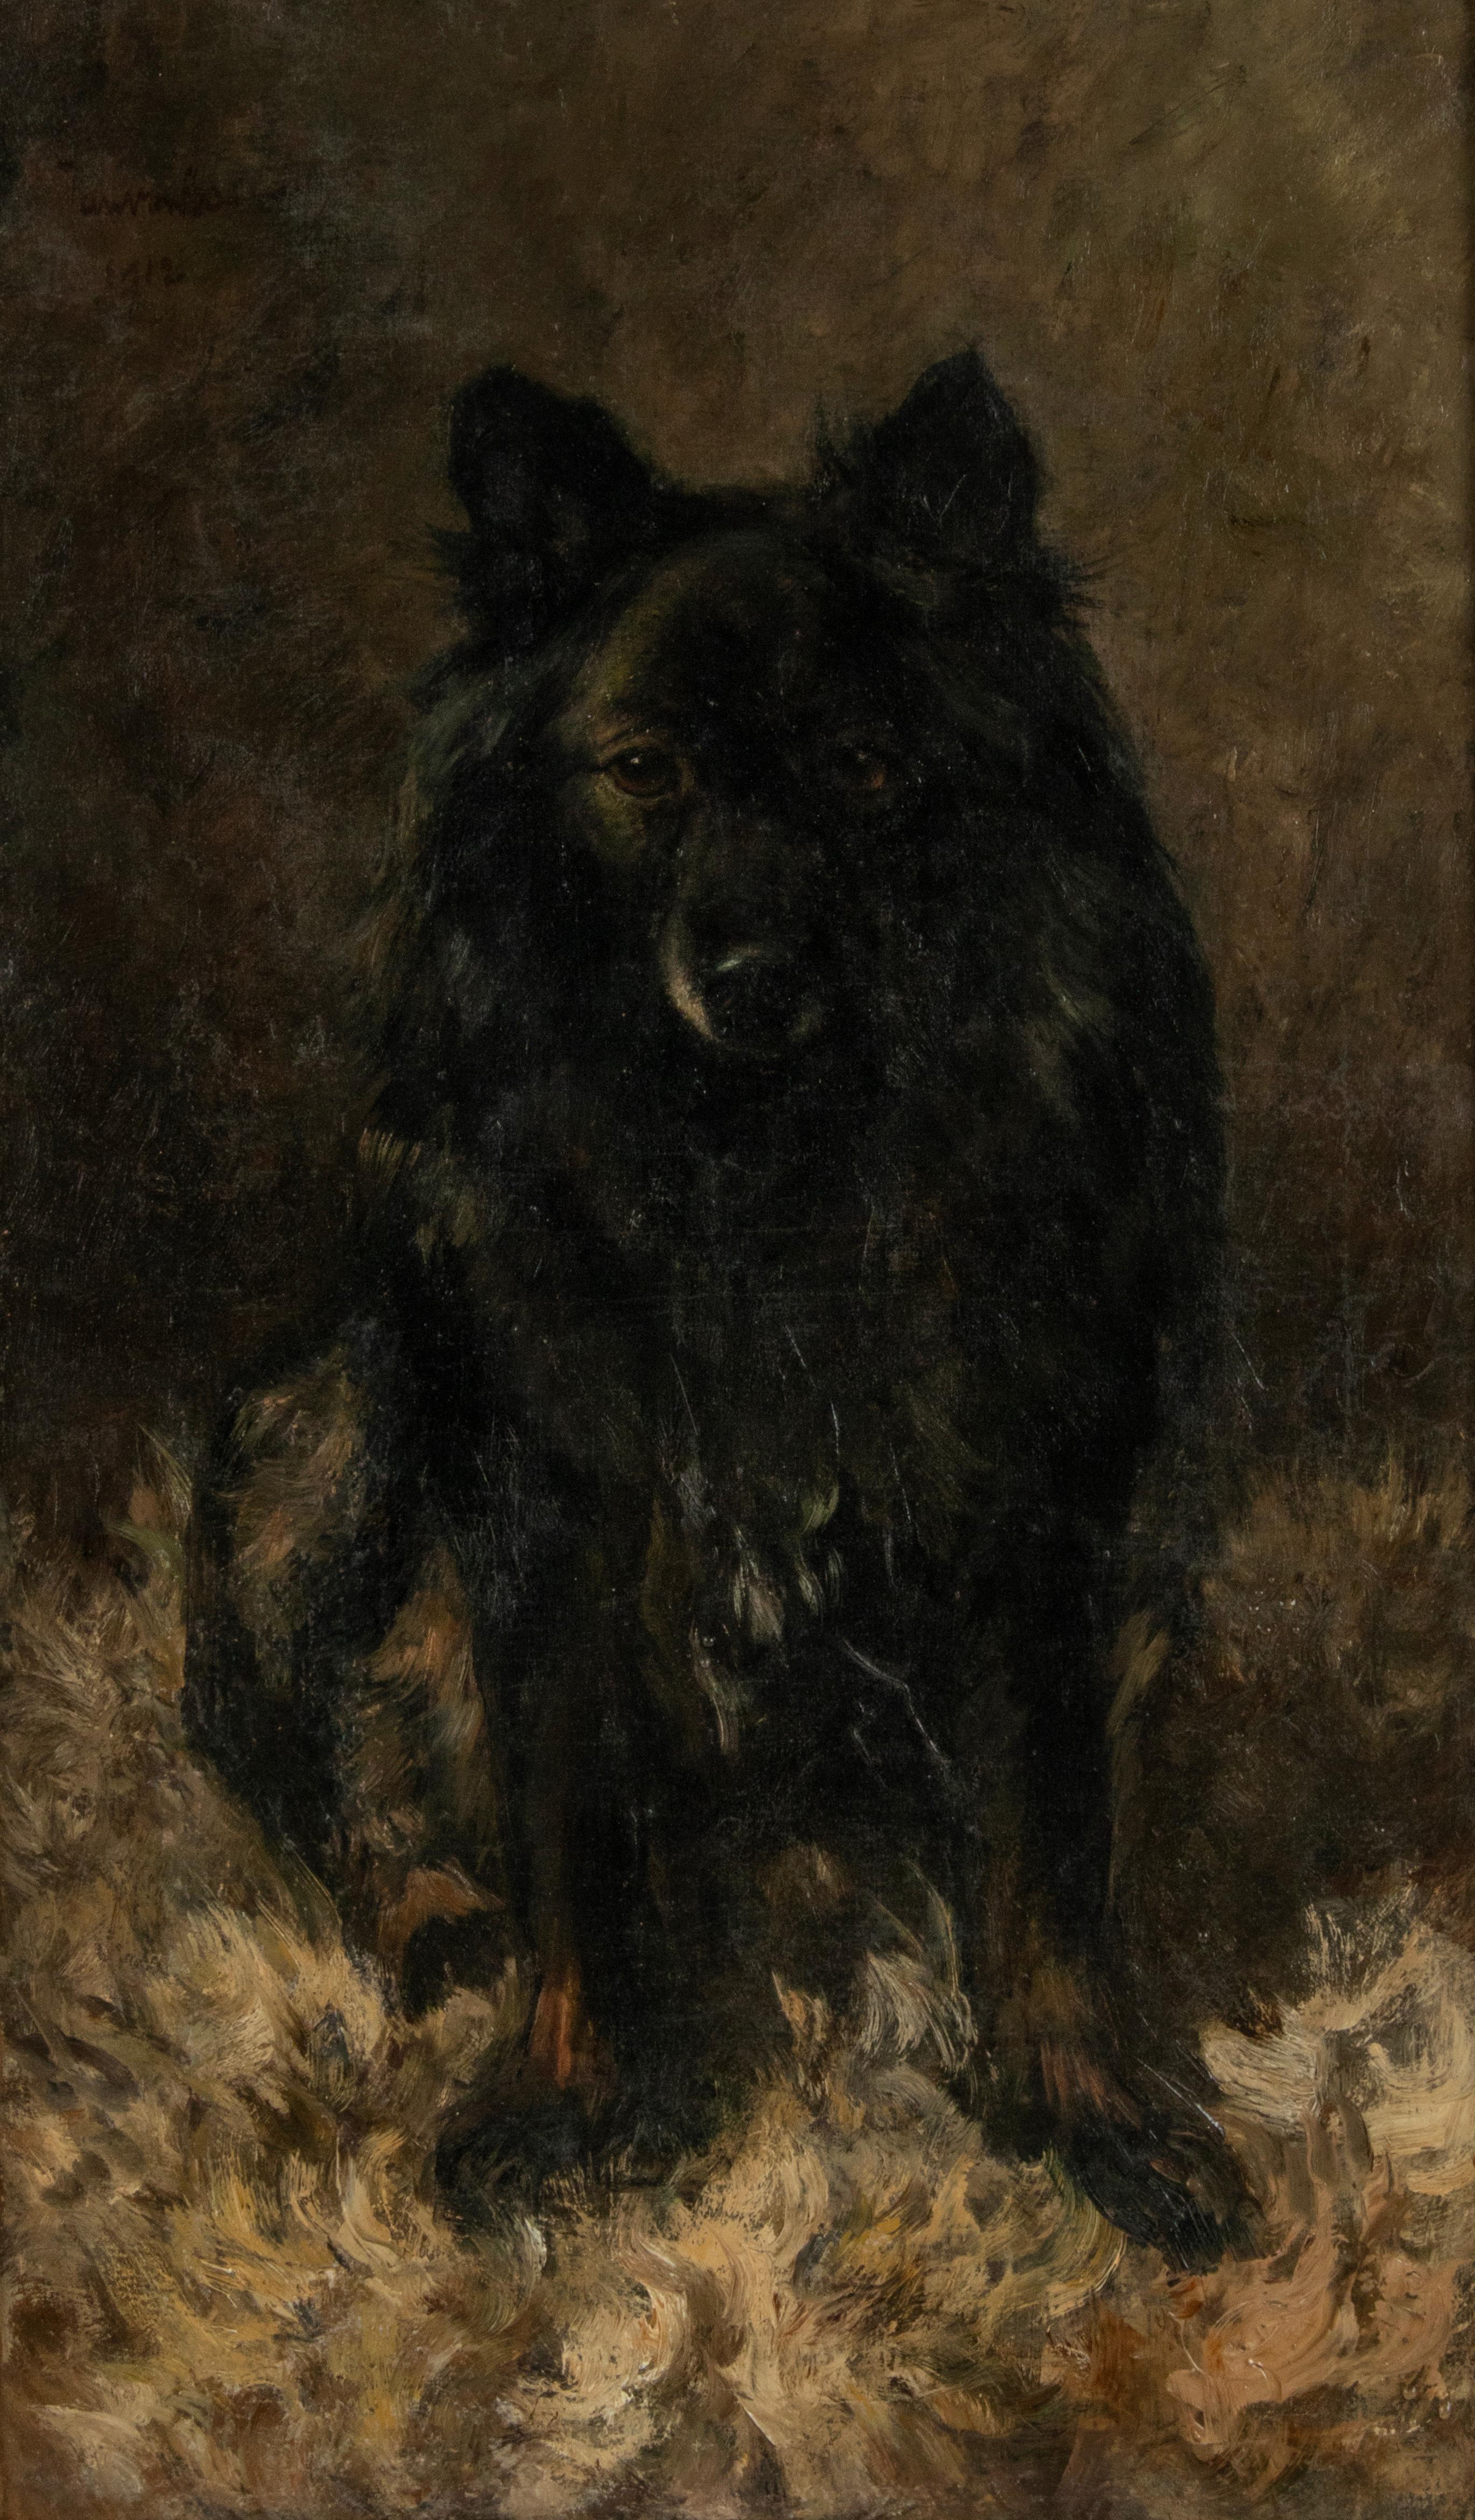 Magnifique portrait de chien réalisé par le peintre néerlandais Jan Essen. Le tableau représente un Schipperke, une race de chien autrefois plus répandue qu'aujourd'hui. C'est un berger de petite taille, d'origine belge. Le peintre a réussi à